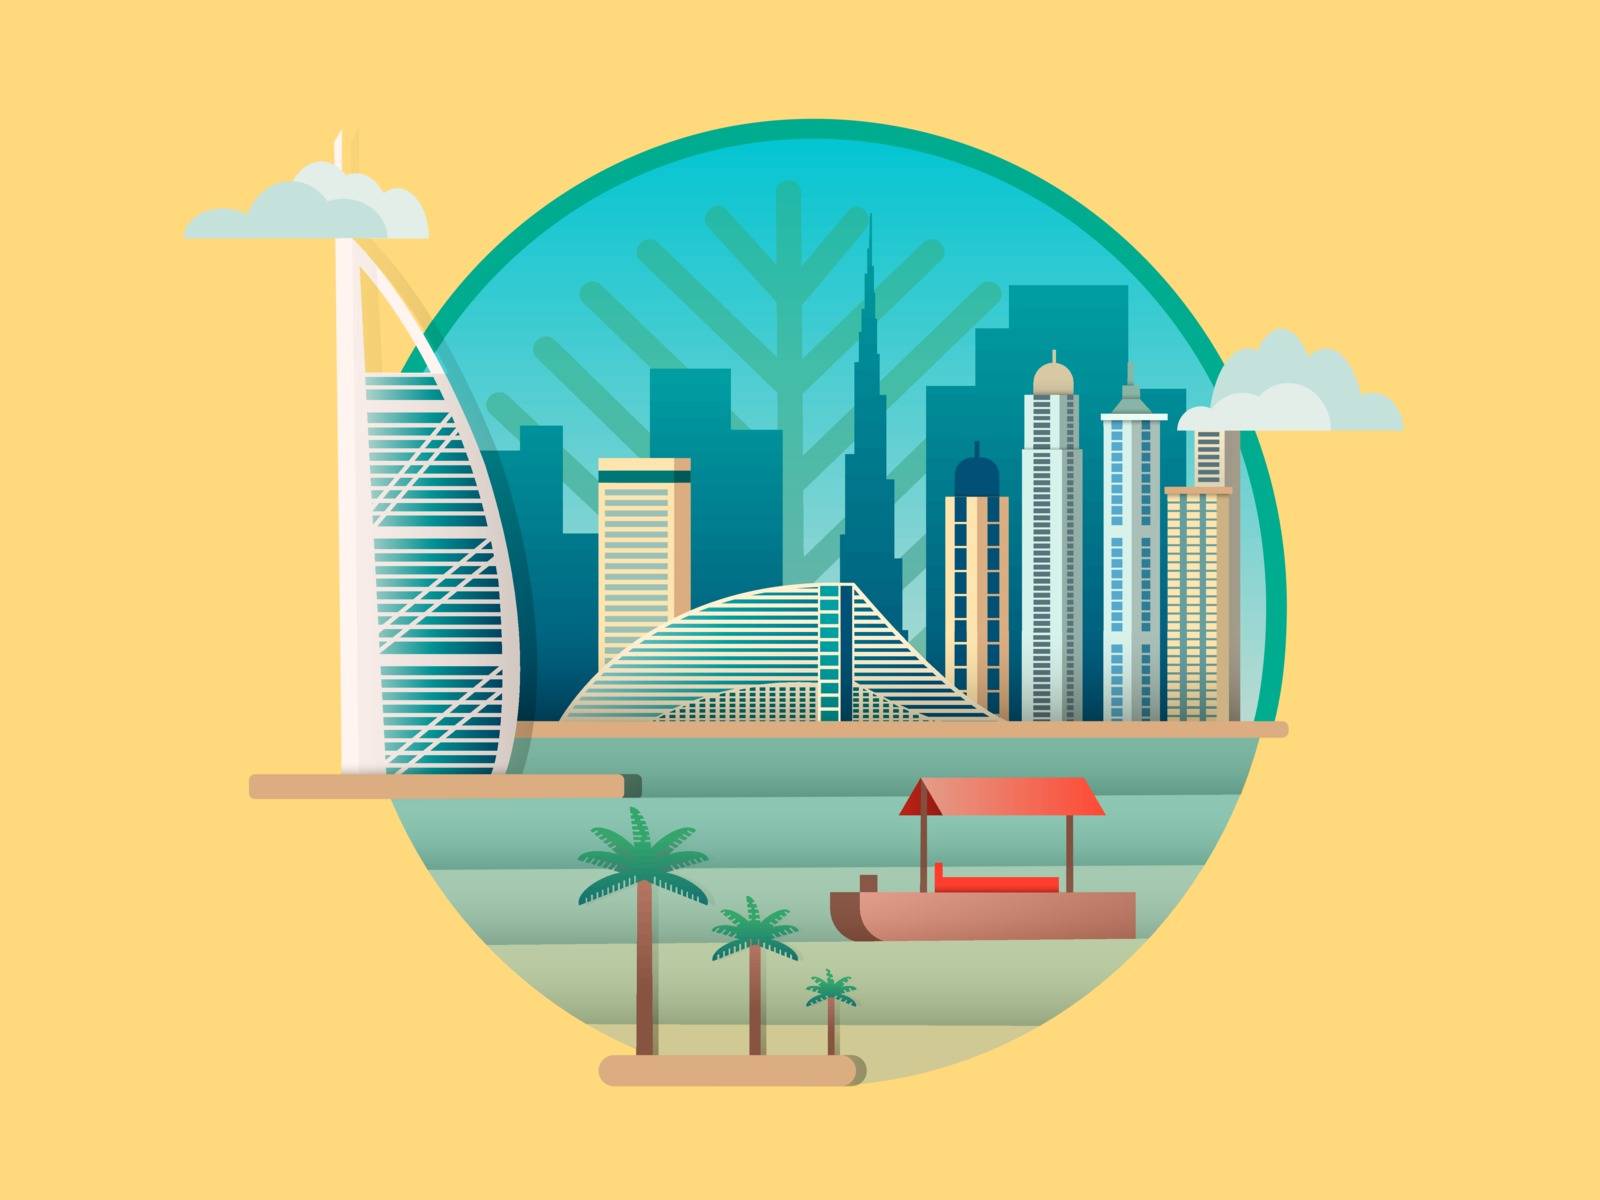 Dubai city building icon. Skyscraper city, tower architecture emirates, vector illustration